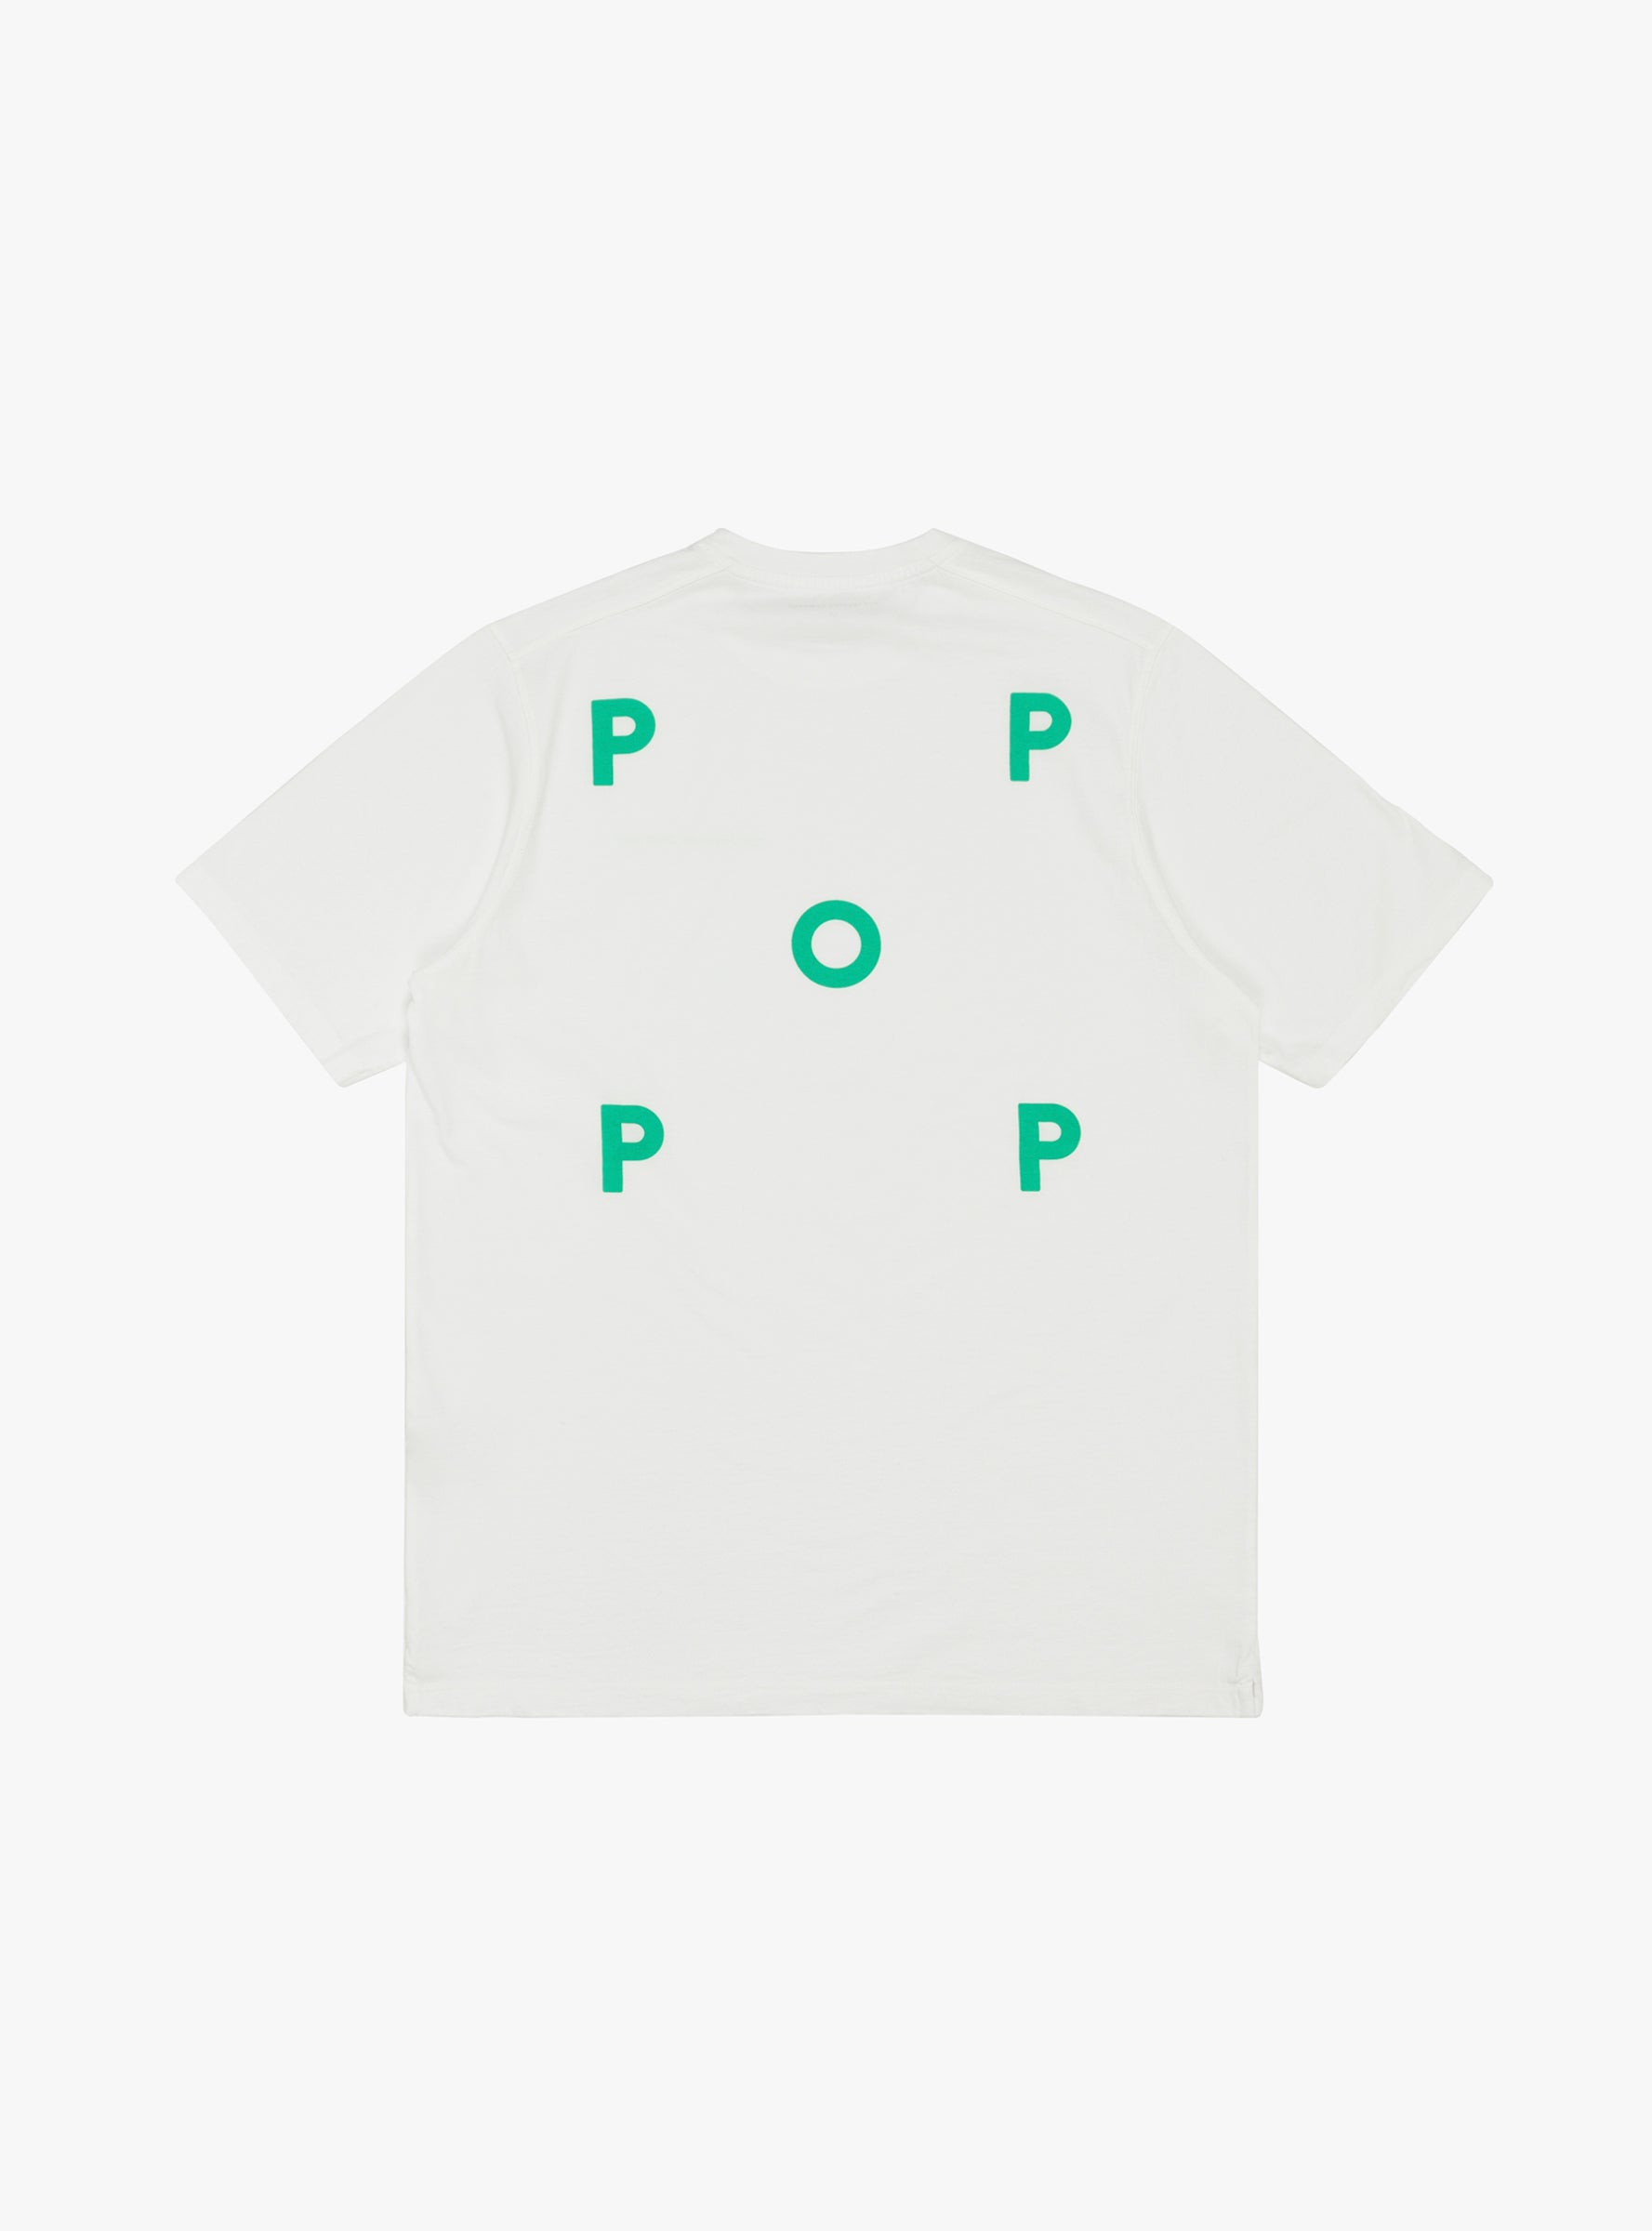 Pop Trading Company Pop Trading Company Logo T-shirt White & Green - Size: Medium